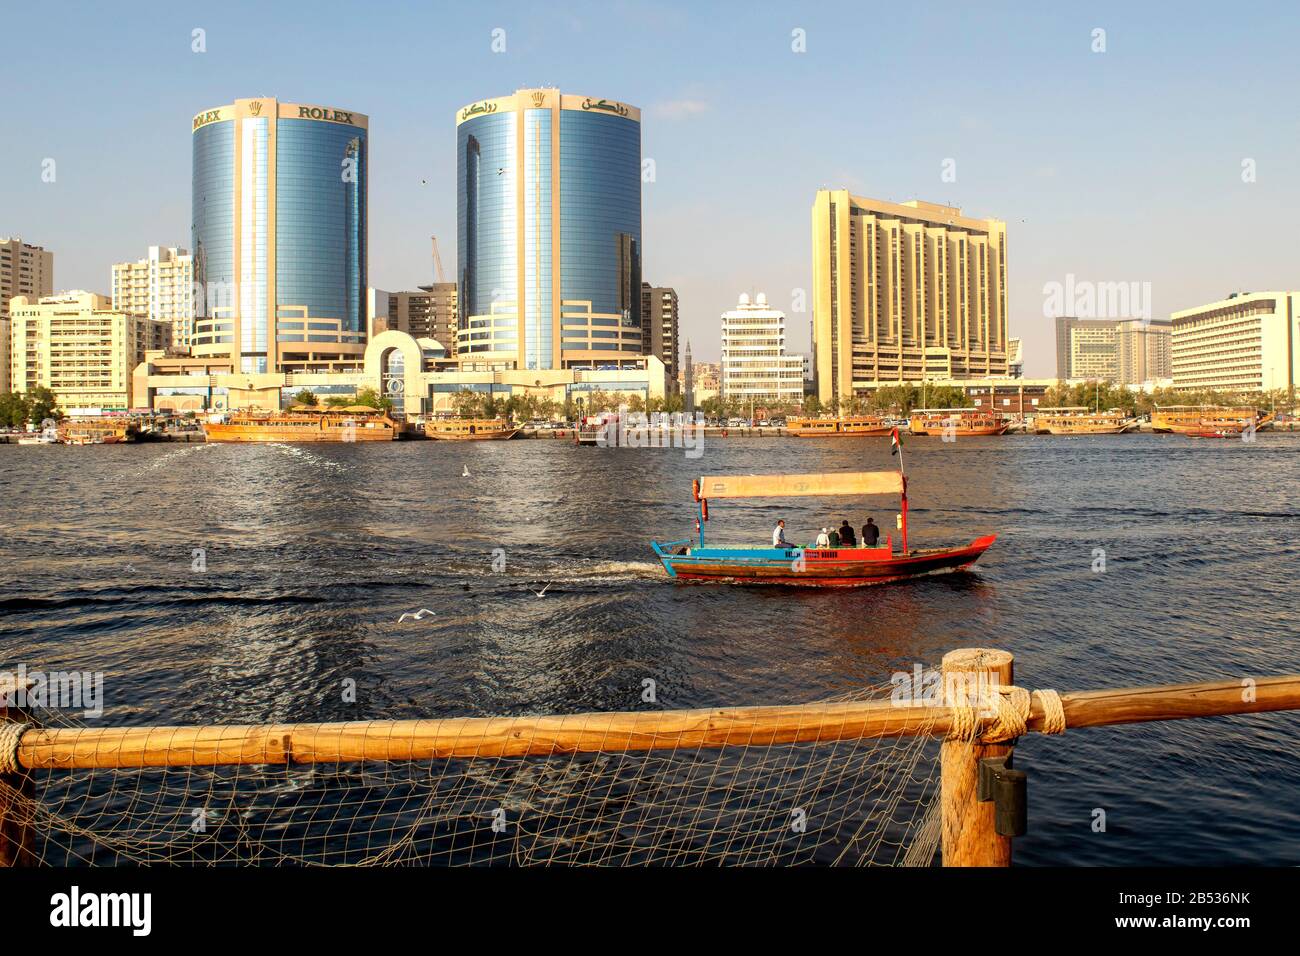 Dubaï/Émirats arabes Unis - 21 février 2020 : vue sur la crique de Dubaï dans la vieille ville depuis la région d'Al Seef. Vieux dhow arabe en bois. Banque D'Images